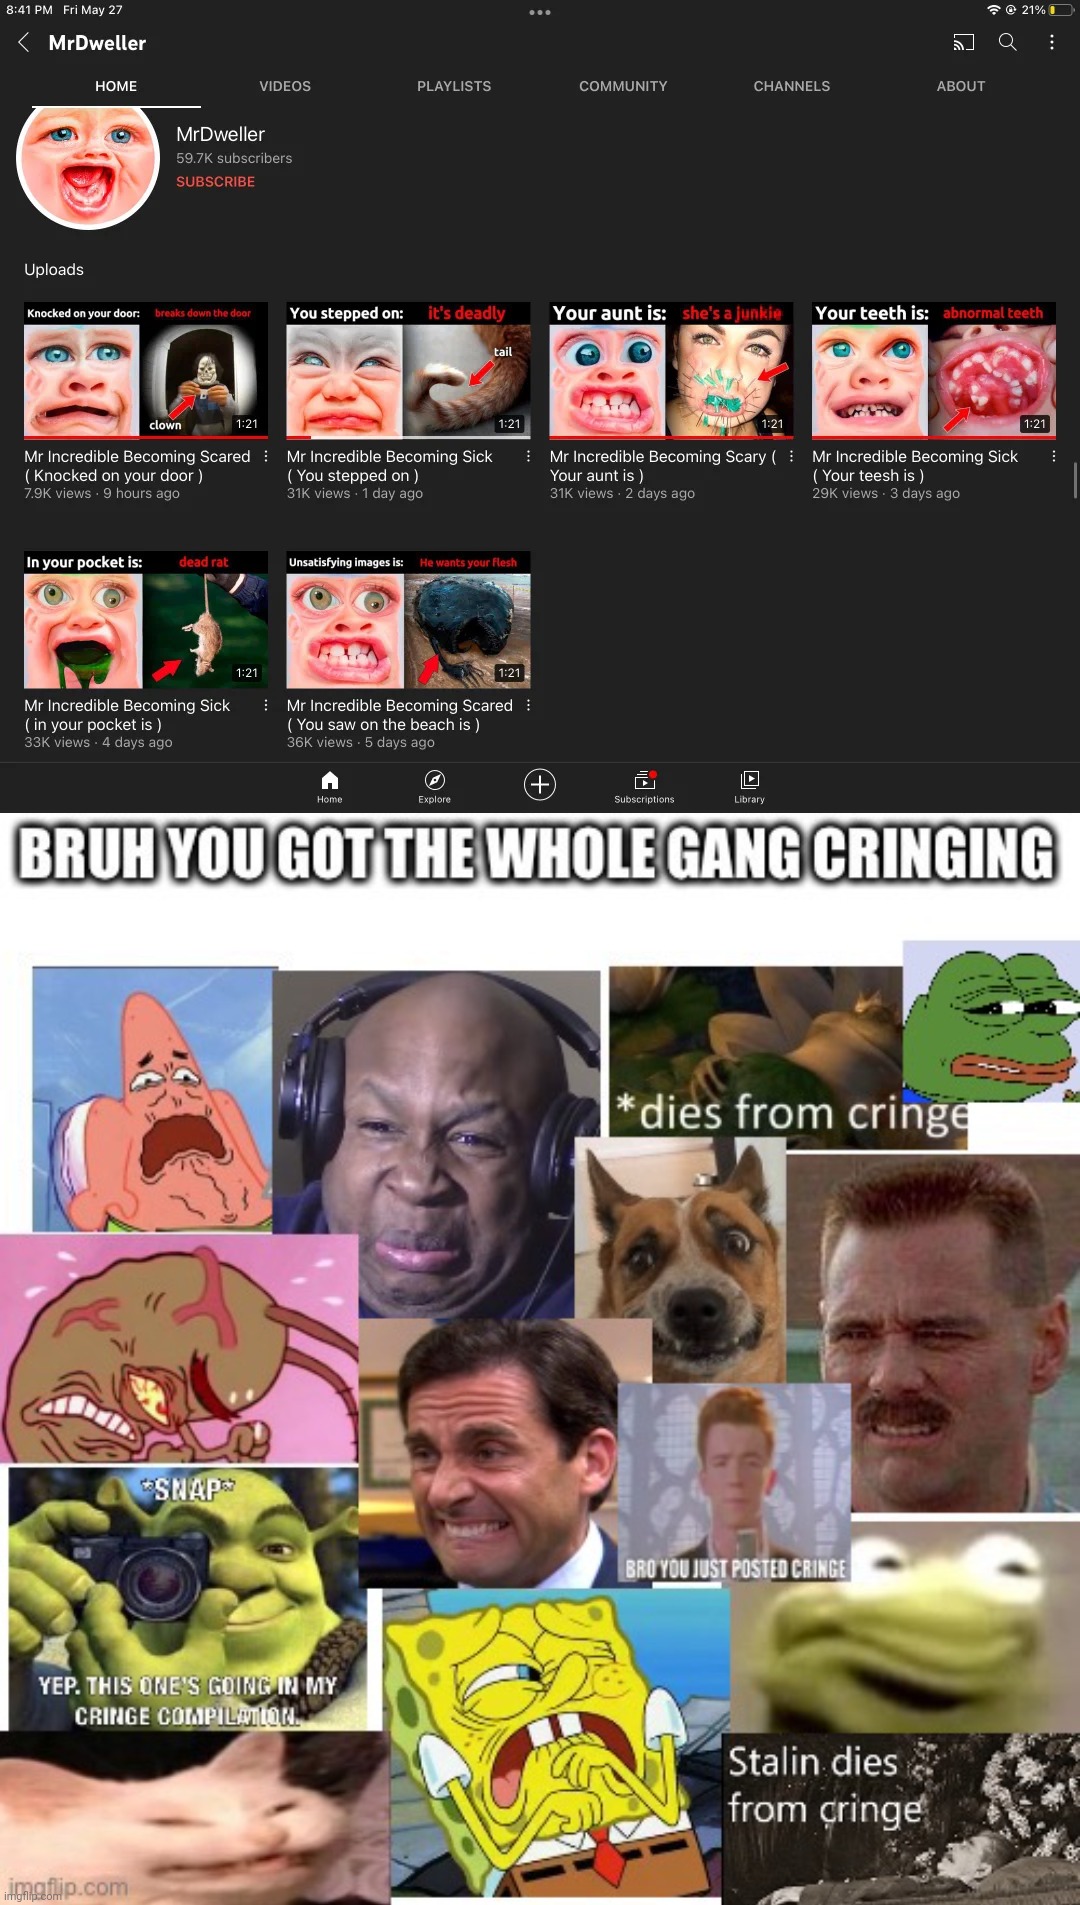 Cringe | image tagged in the gang cringes,cringe,memes | made w/ Imgflip meme maker